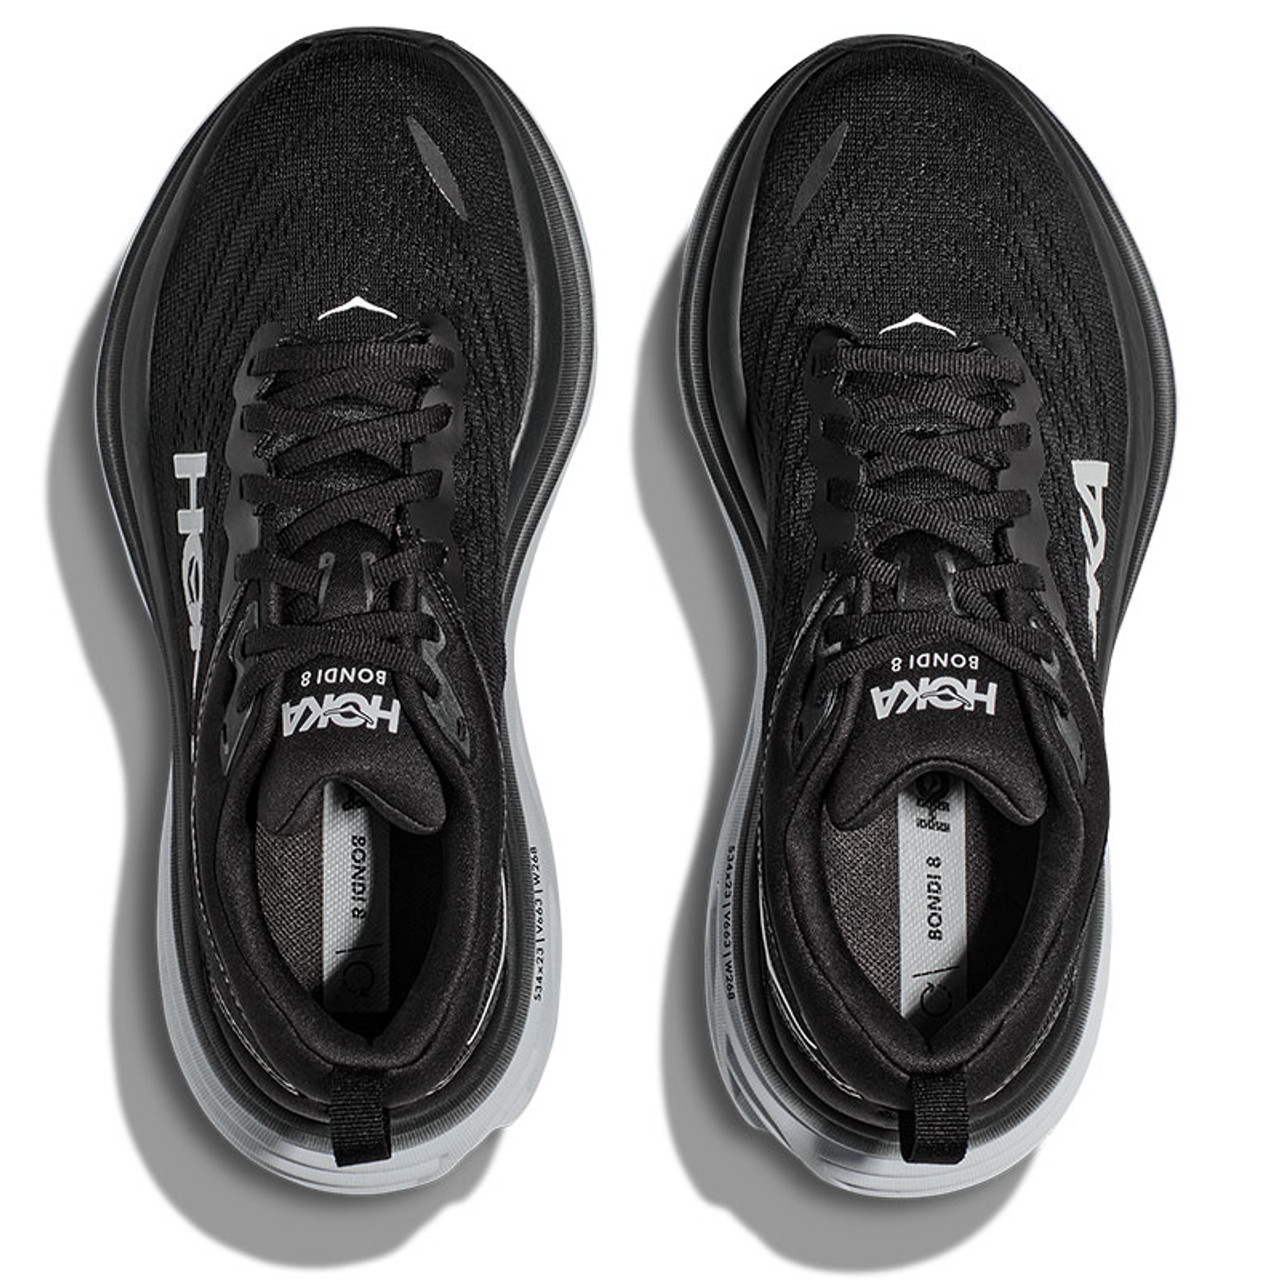 Men's Bondi 8 Running Shoe, Running Shoes For Men